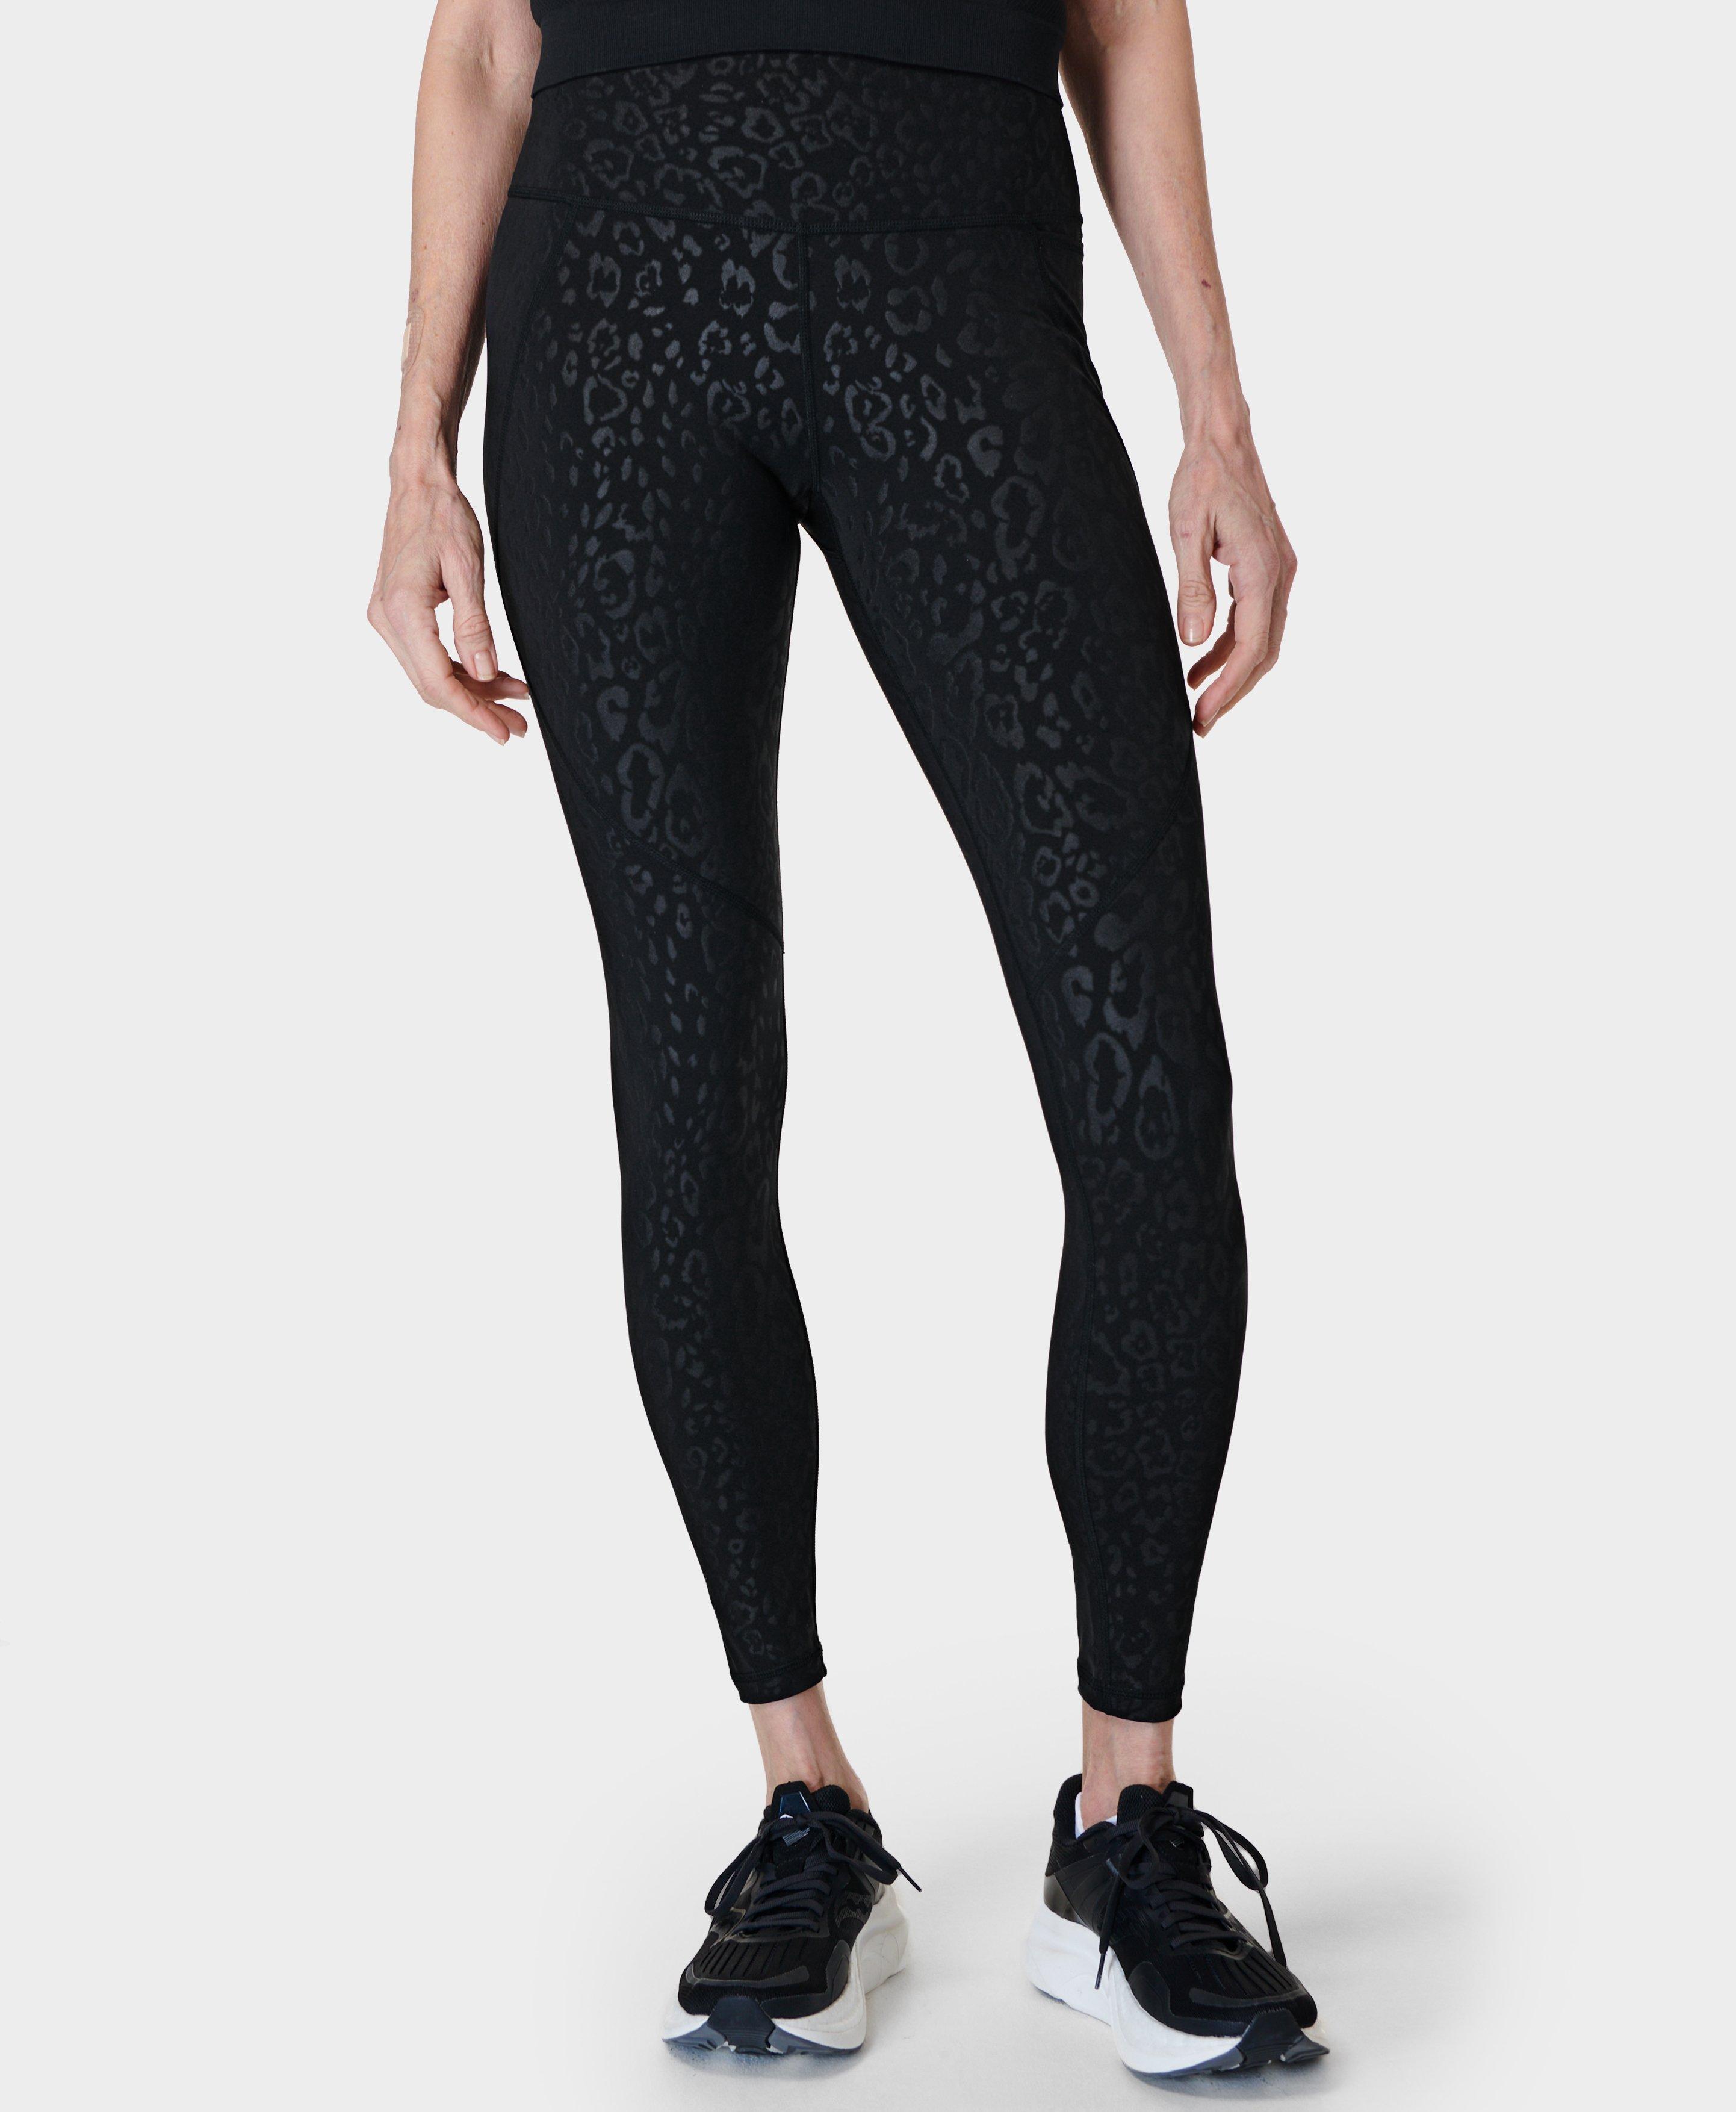 Sage Animal print Cheetah Leggings Black Cream Orange Workout Yoga pants  Size XL | eBay